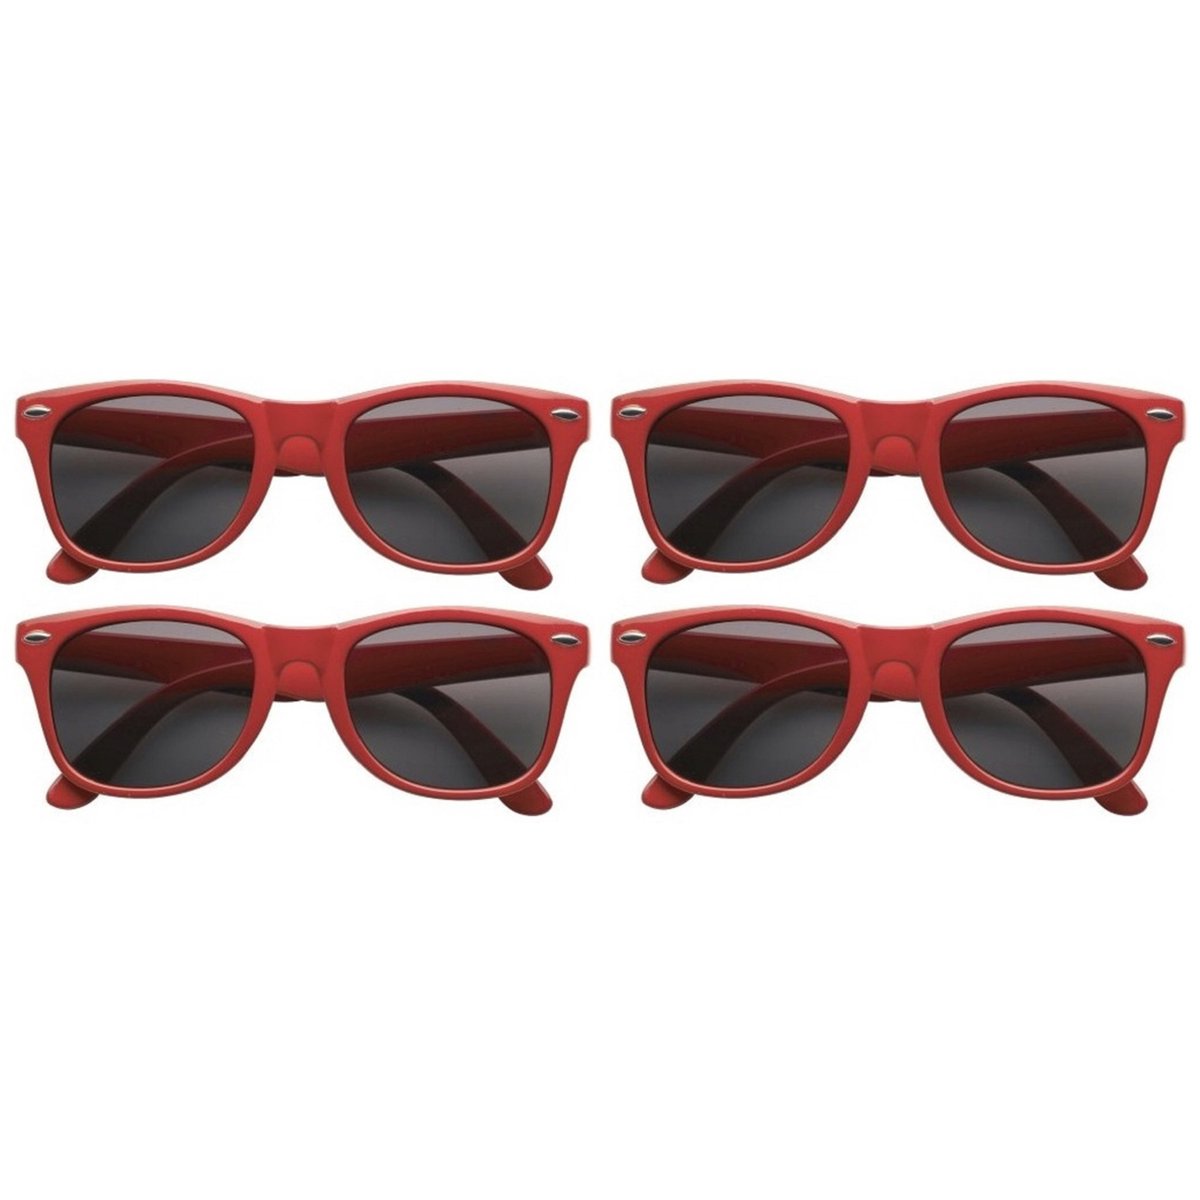 12x stuks zonnebril rood - UV400 bescherming - Zonnebrillen voor dames/heren